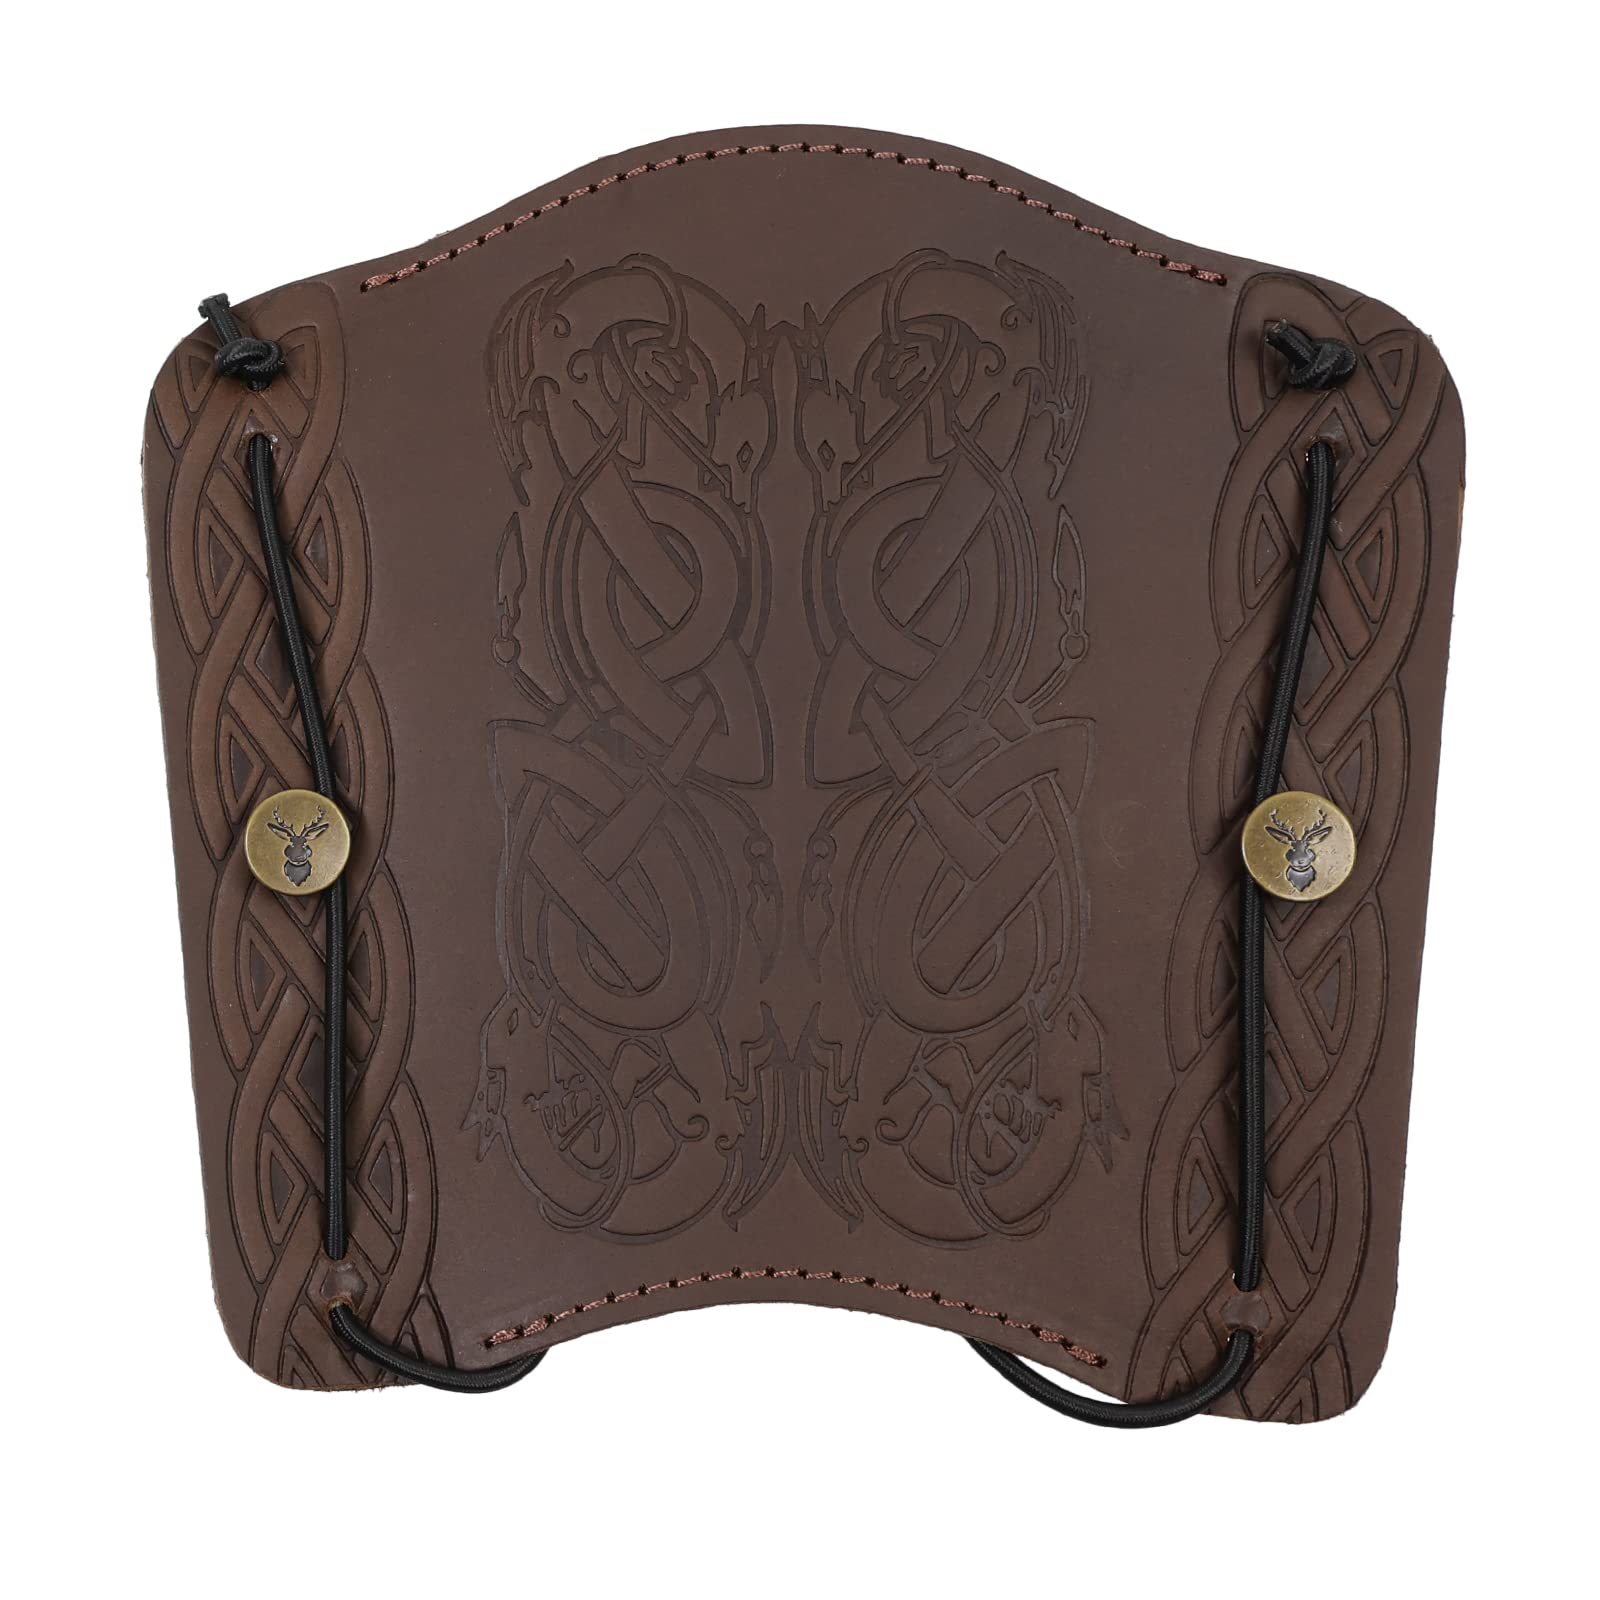 Jackalope Dragun - Plate - Armschutz; Zubehör zum Bogenschießen, Schutz aus hochwertiges weiches Leder mit Ornament (Coffee)